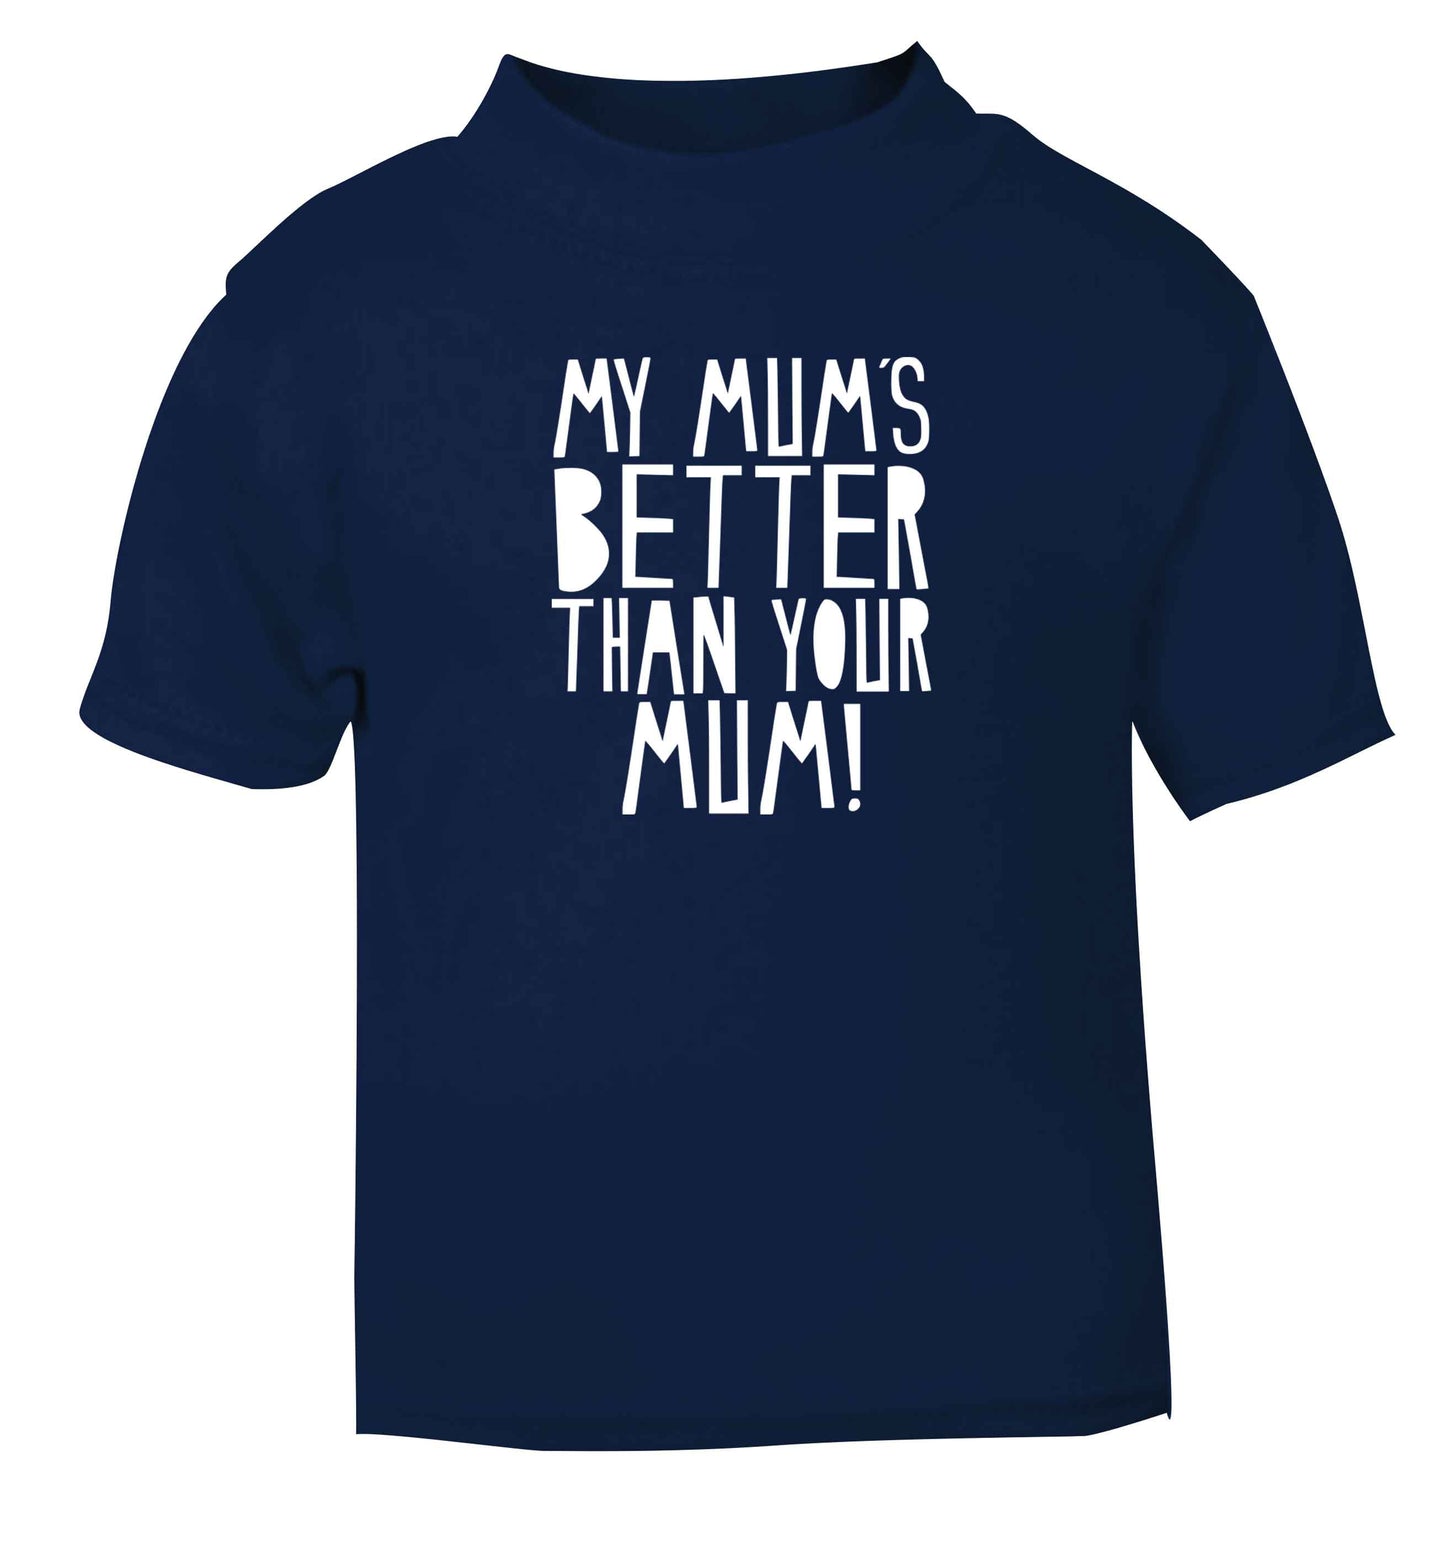 My mum's better than your mum navy baby toddler Tshirt 2 Years